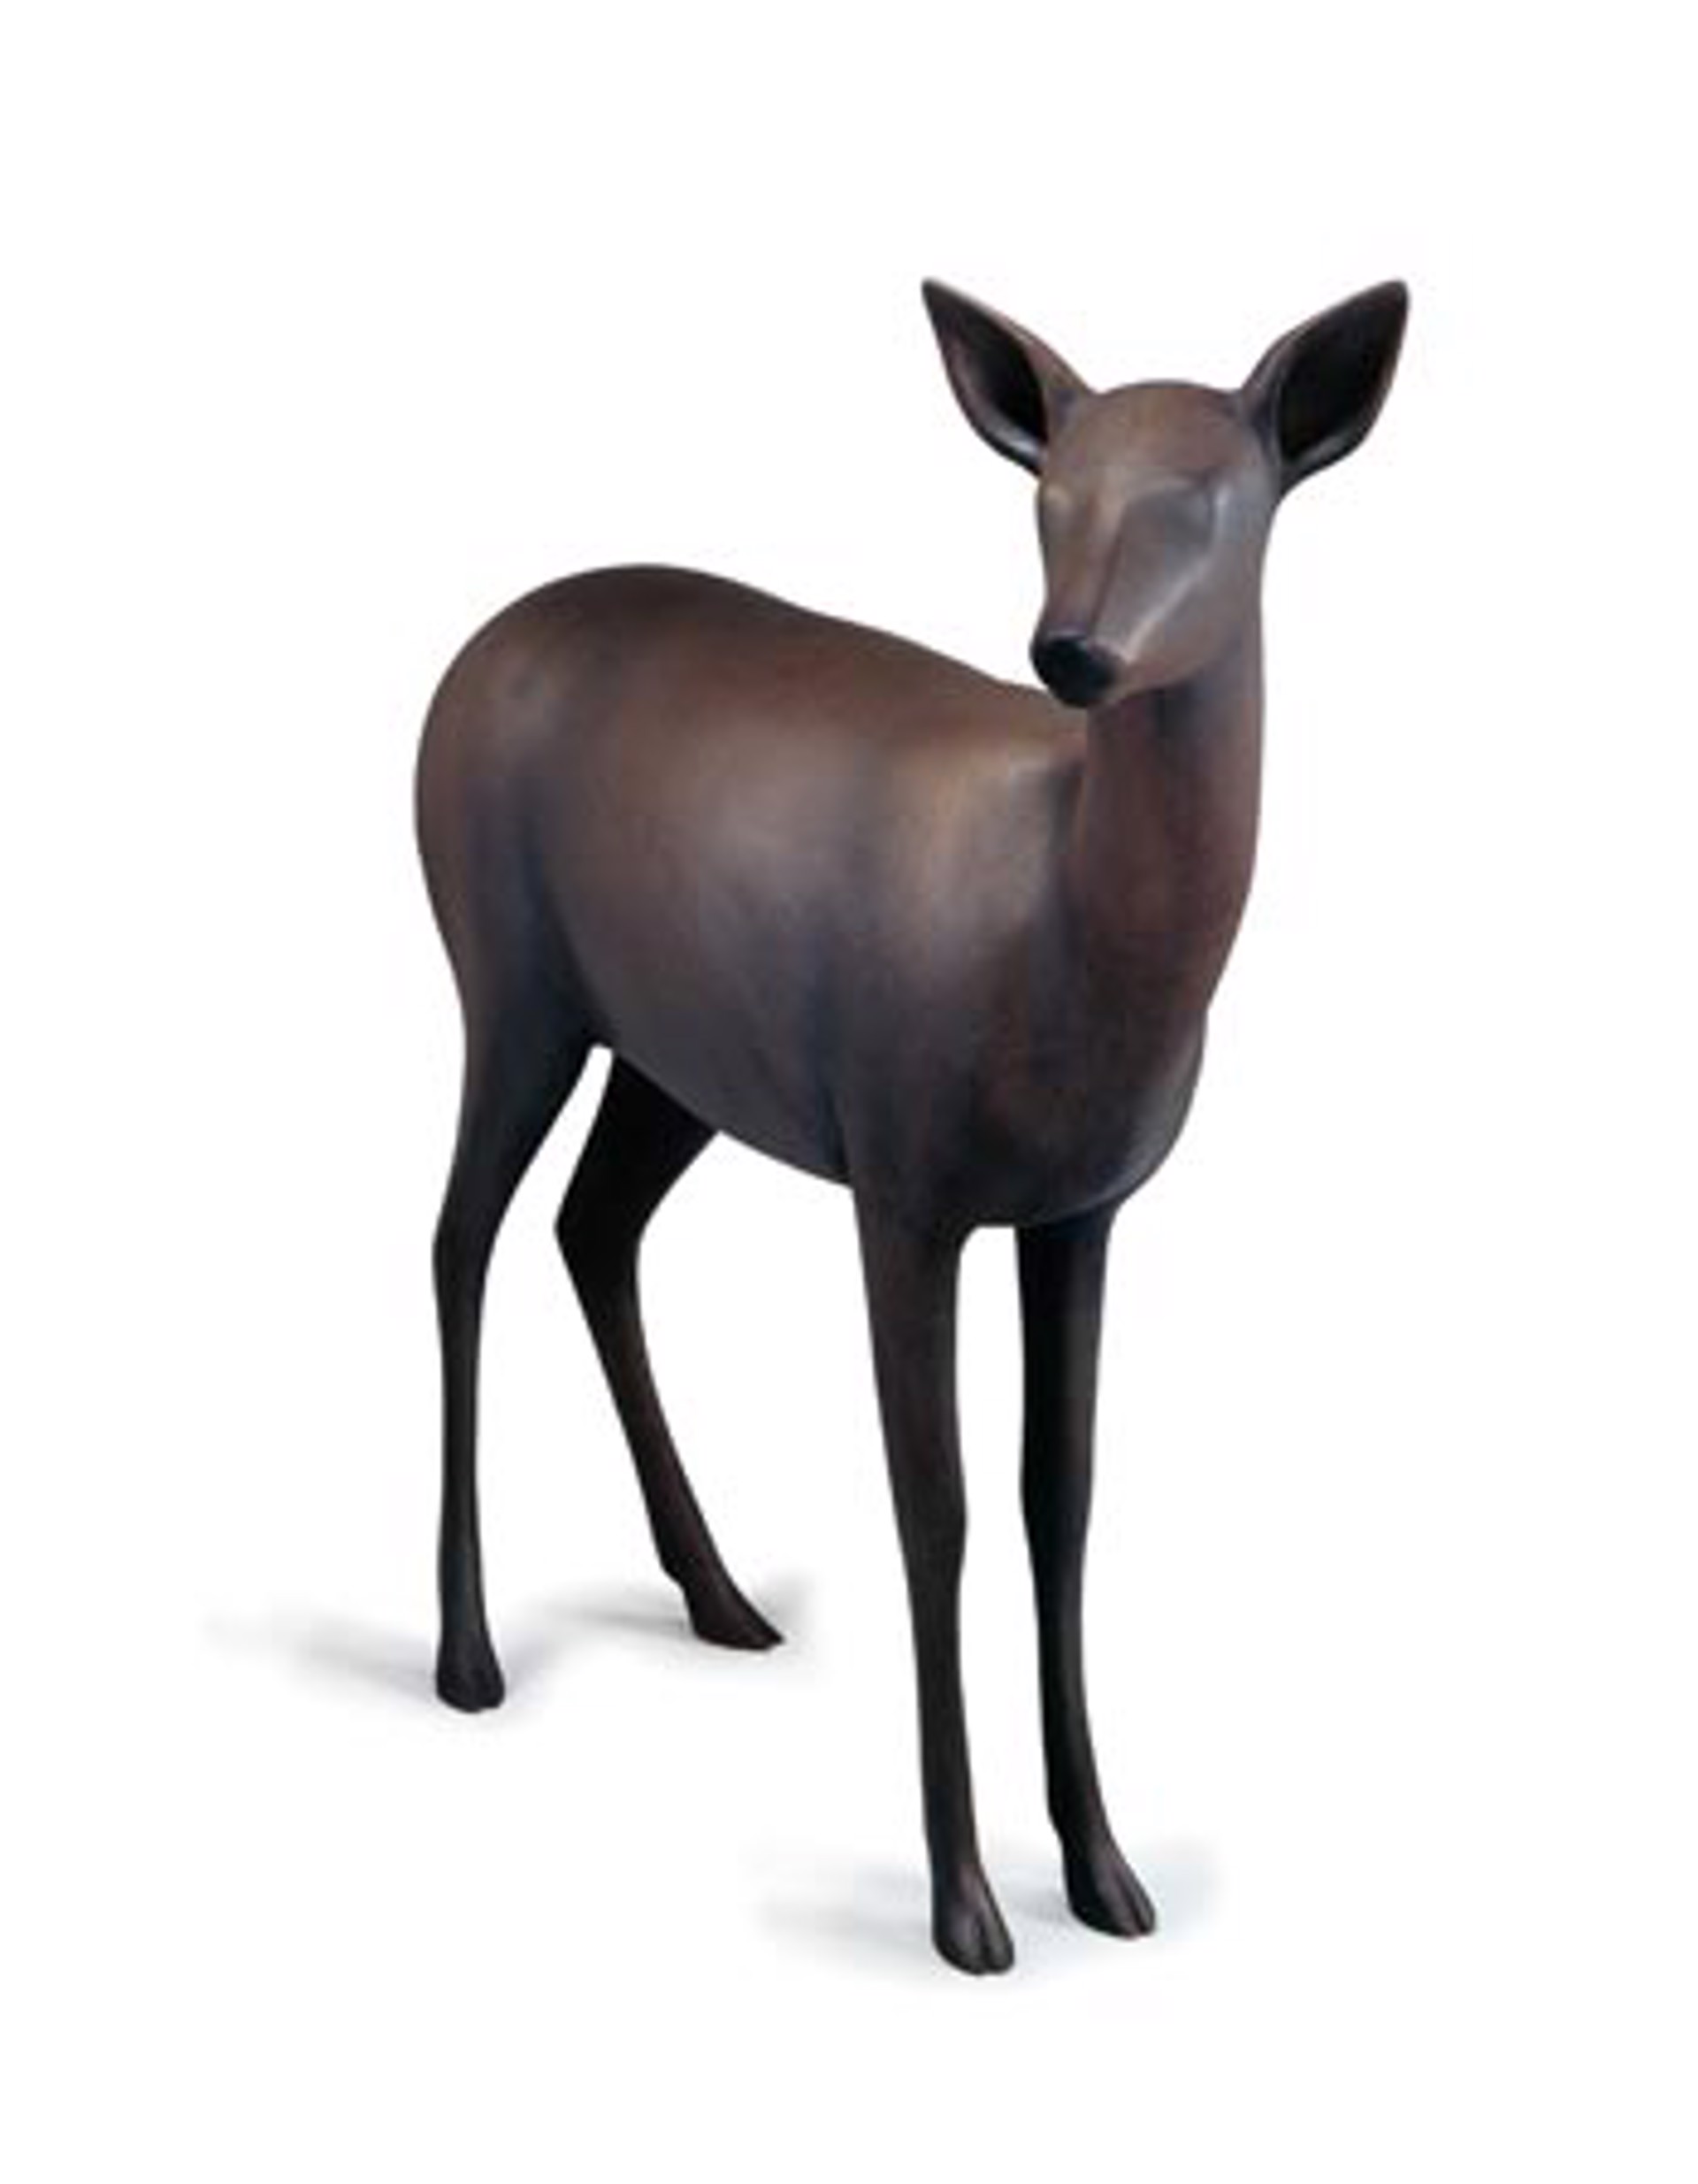 Deer 1 by Gwynn Murrill